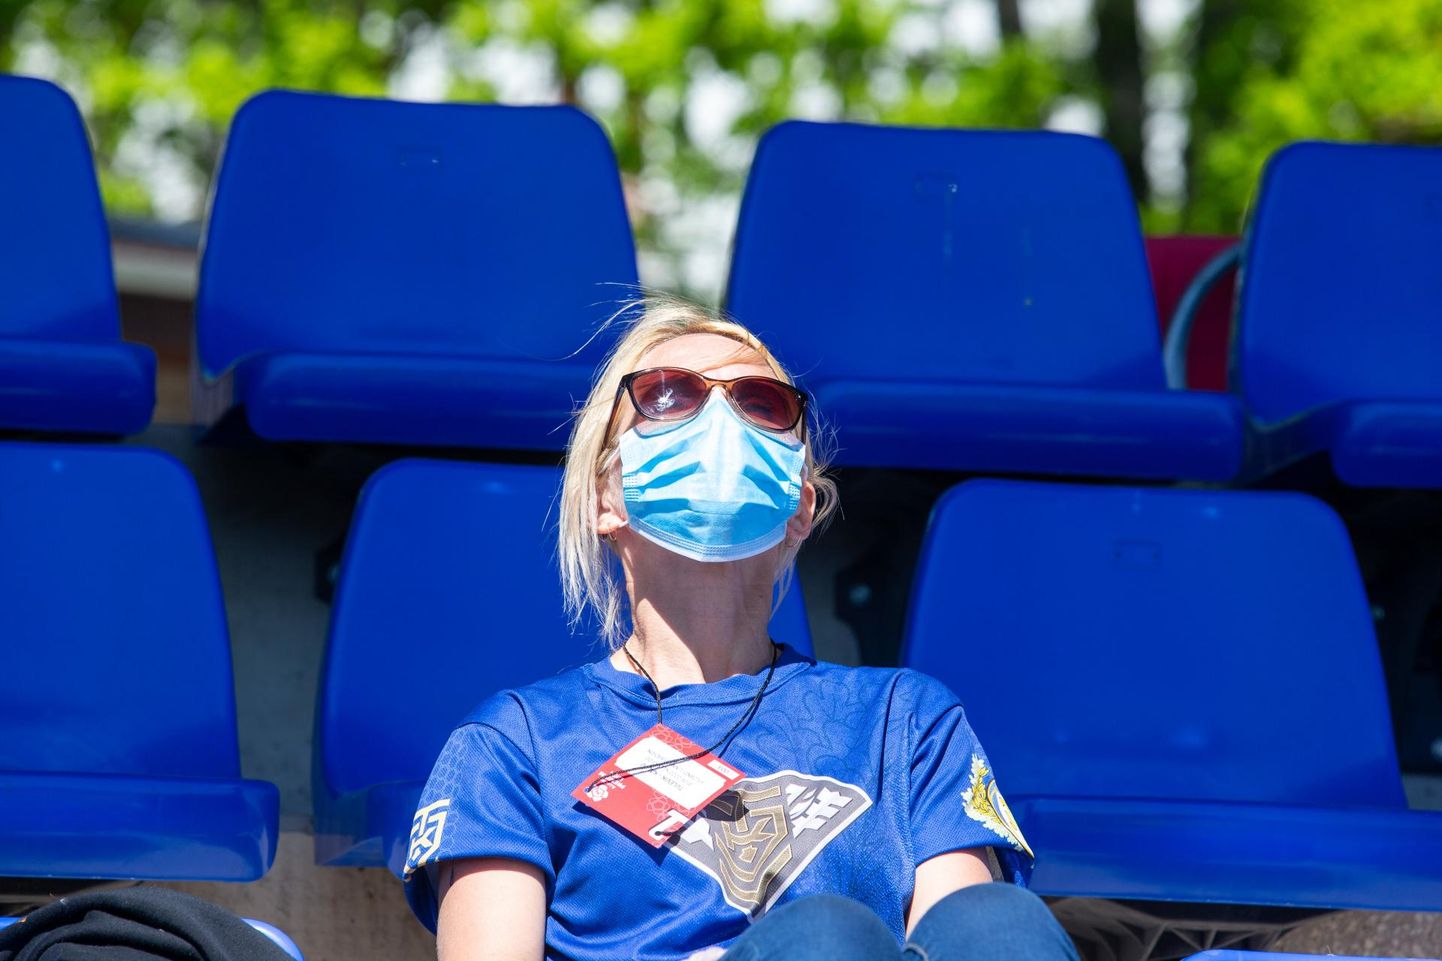 Eesti olümpiakomitee on sätestanud, et ruumis sees peavad pealtvaatajad maske kandma. Olgugi et jalgpalli saab nautida värskes õhus, on ka välitribüünidel maski kandmine soovituslik.